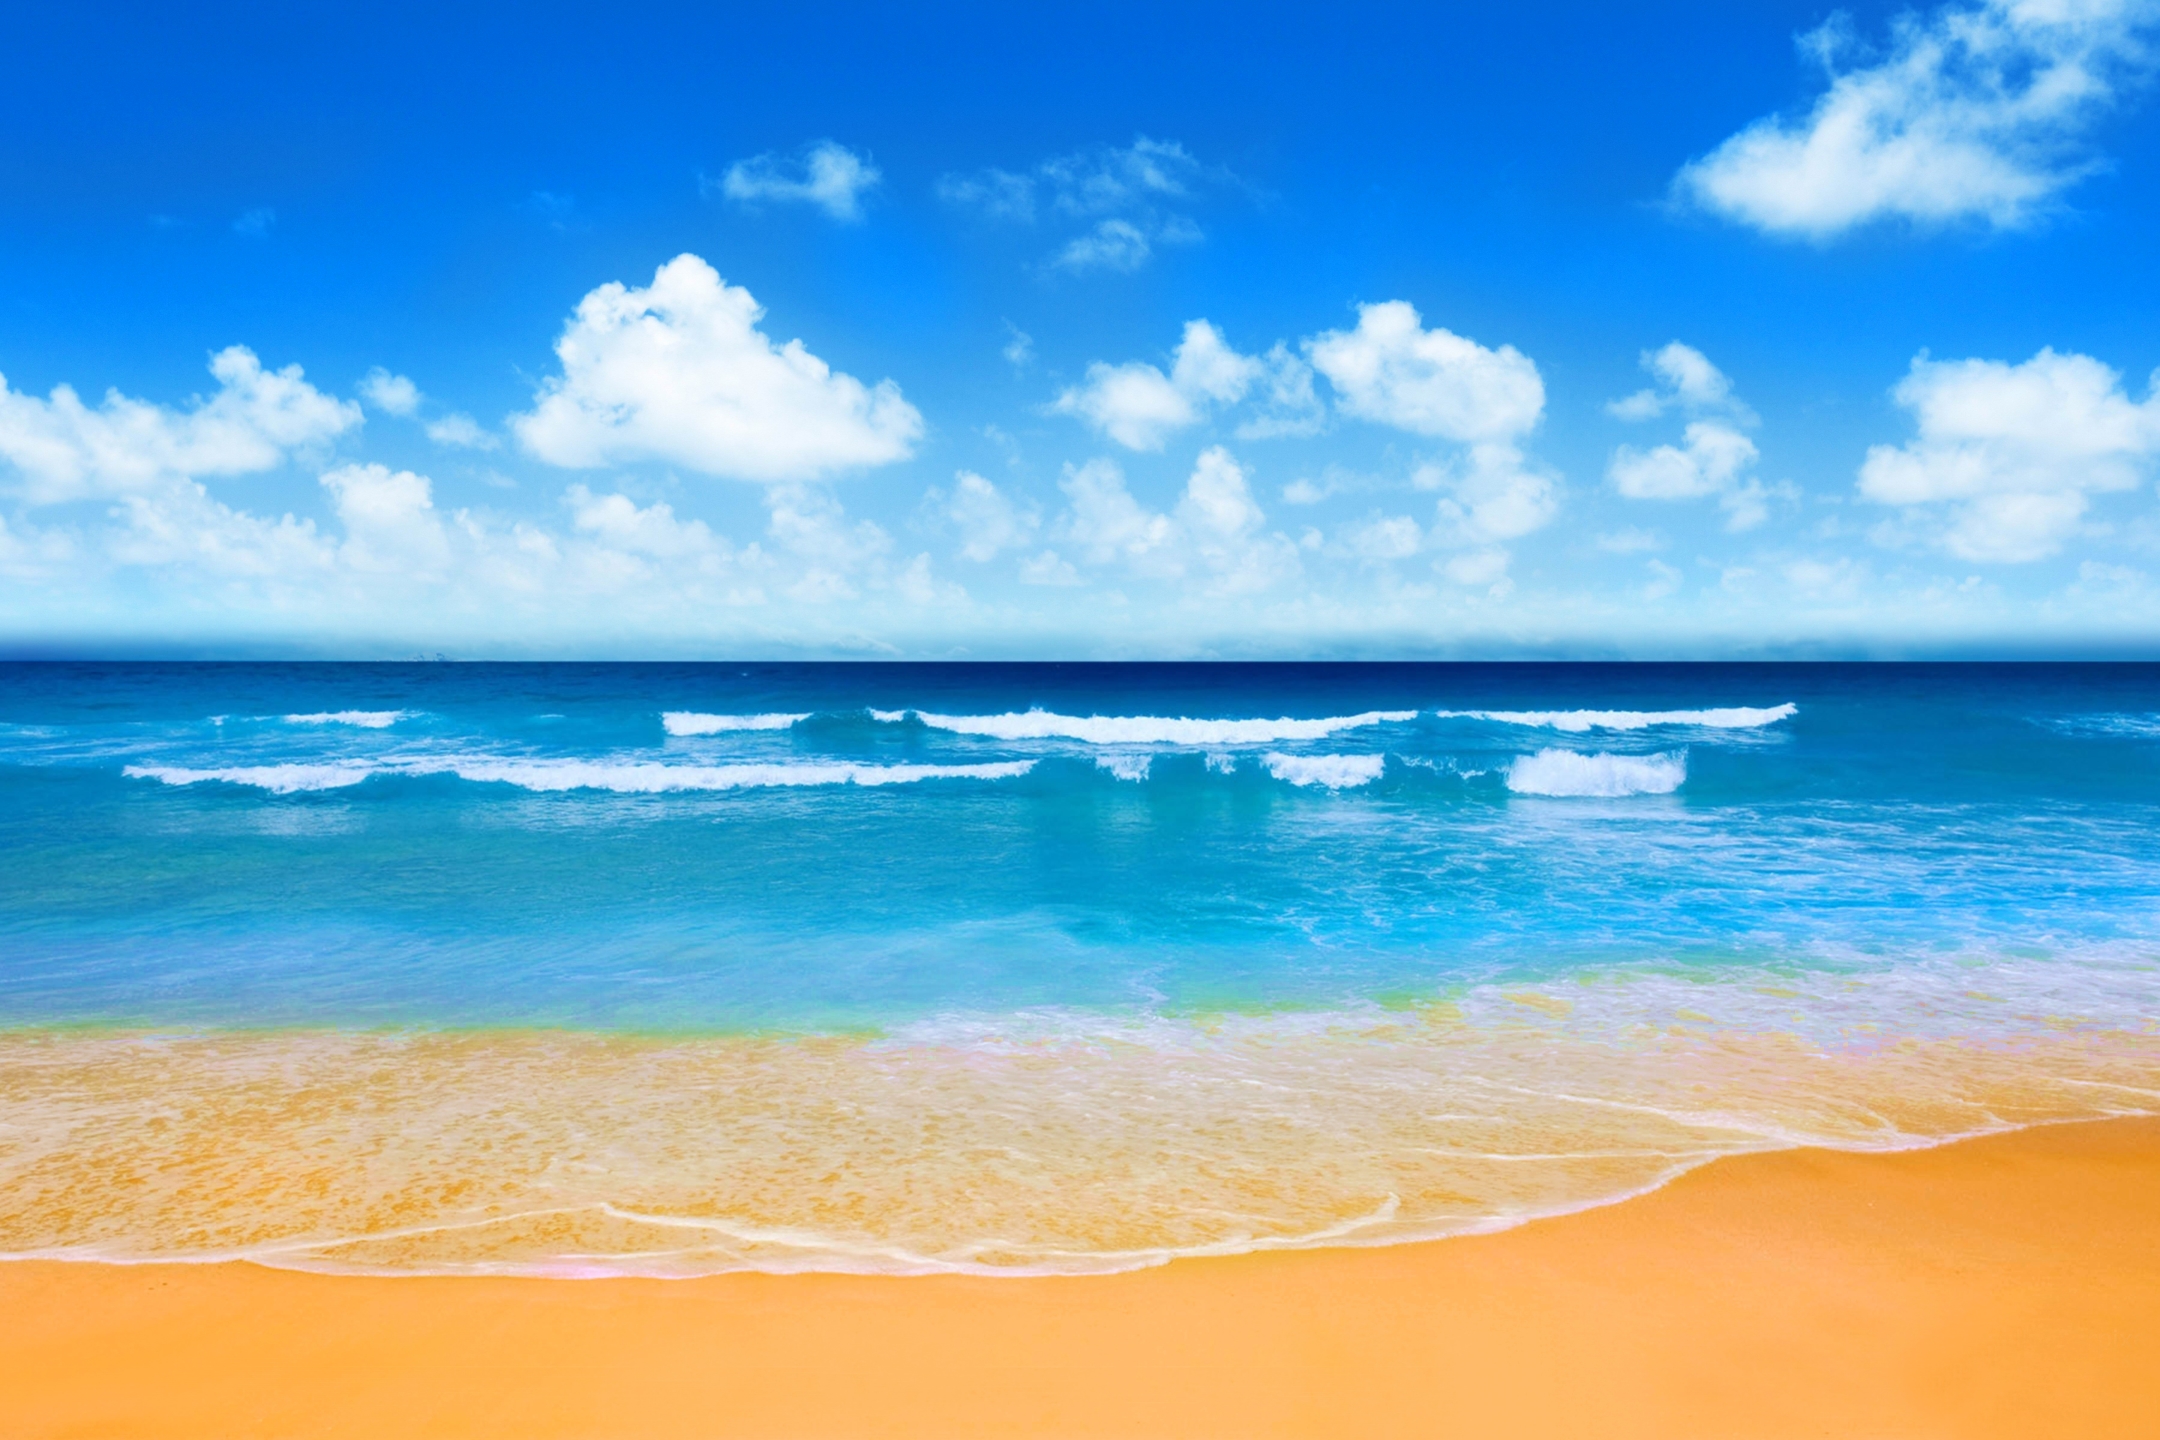 Скачать обои бесплатно Пляж, Лето, Горизонт, Земля/природа картинка на рабочий стол ПК